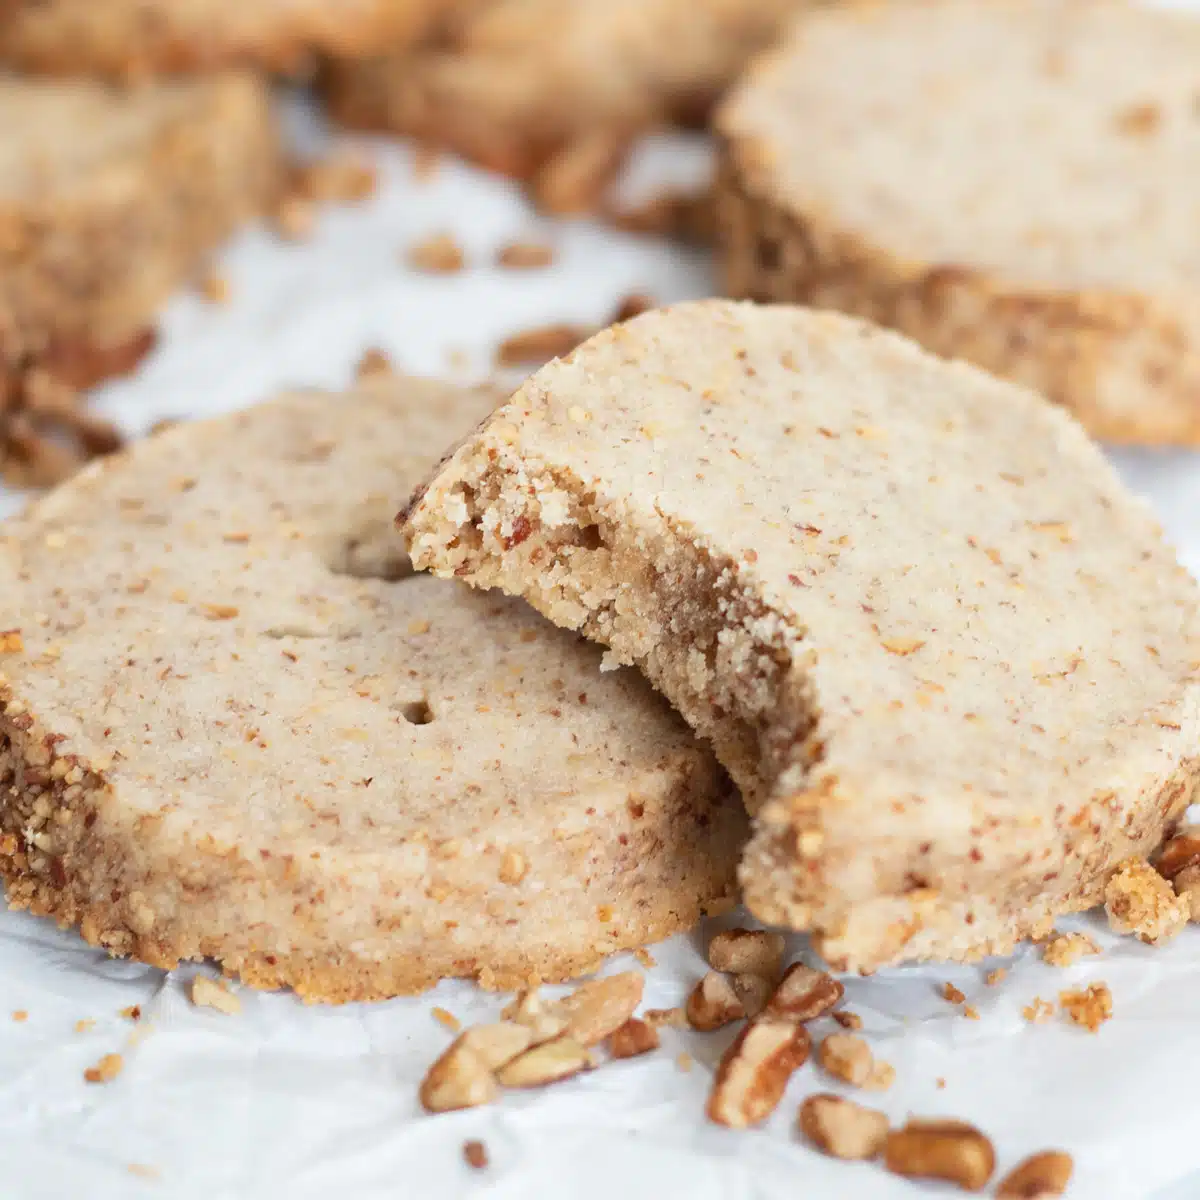 Nejlepší recept na pekanové pískové sušenky, které se pečou dokonale měkké s praženými drcenými pekanovými ořechy v křehké sušence.